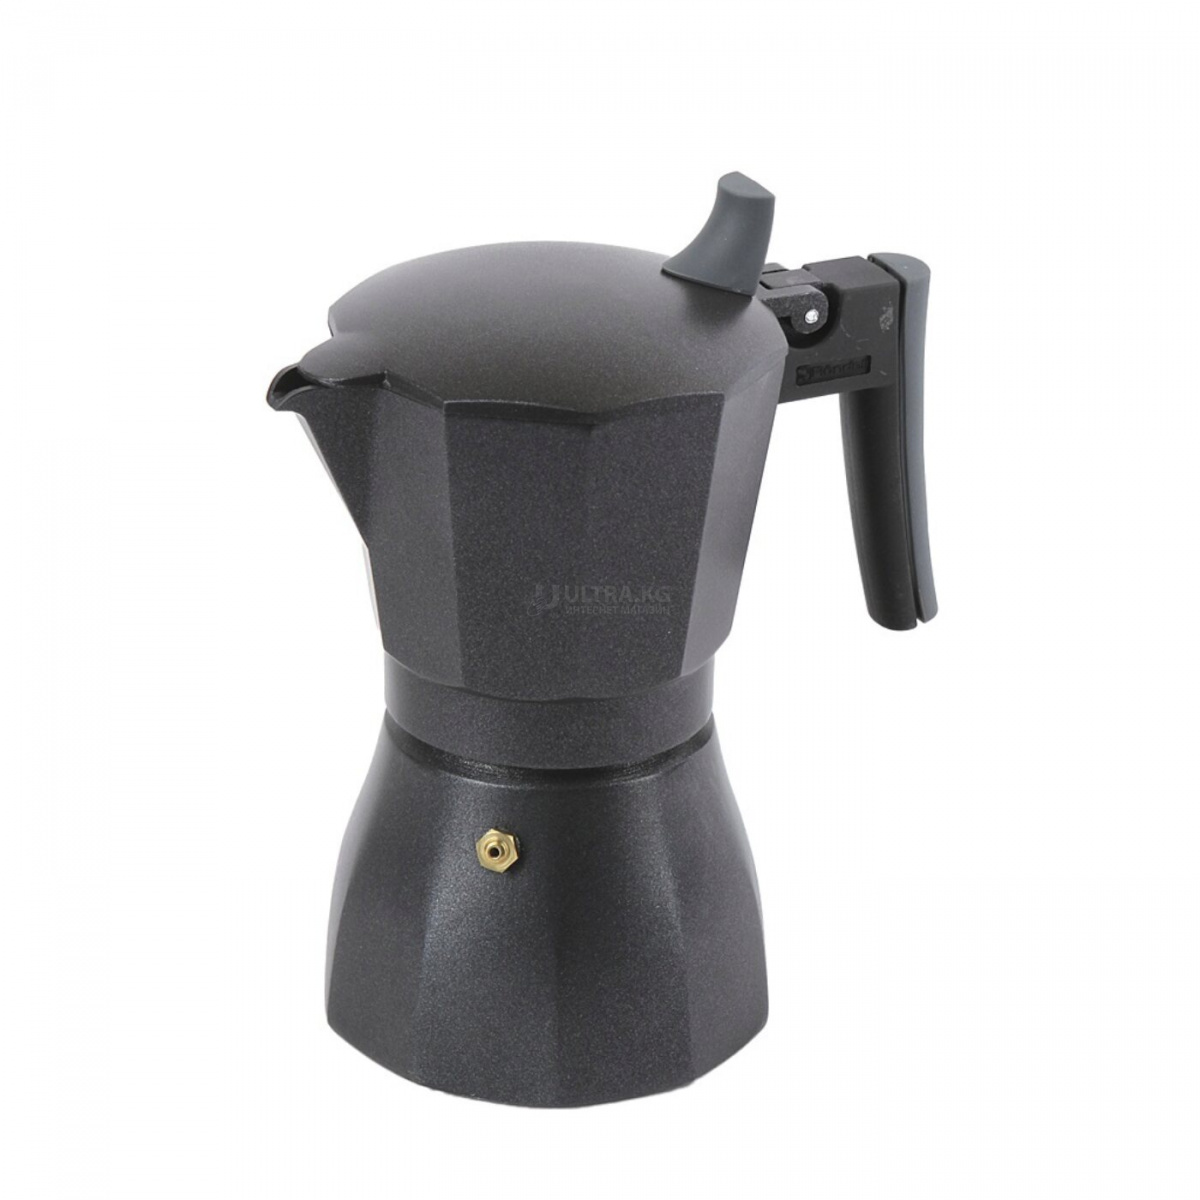 Гейзерная кофеварка Rondell RDS-499 Объем 0,35 литра, Материал алюминий, Цвет серый.